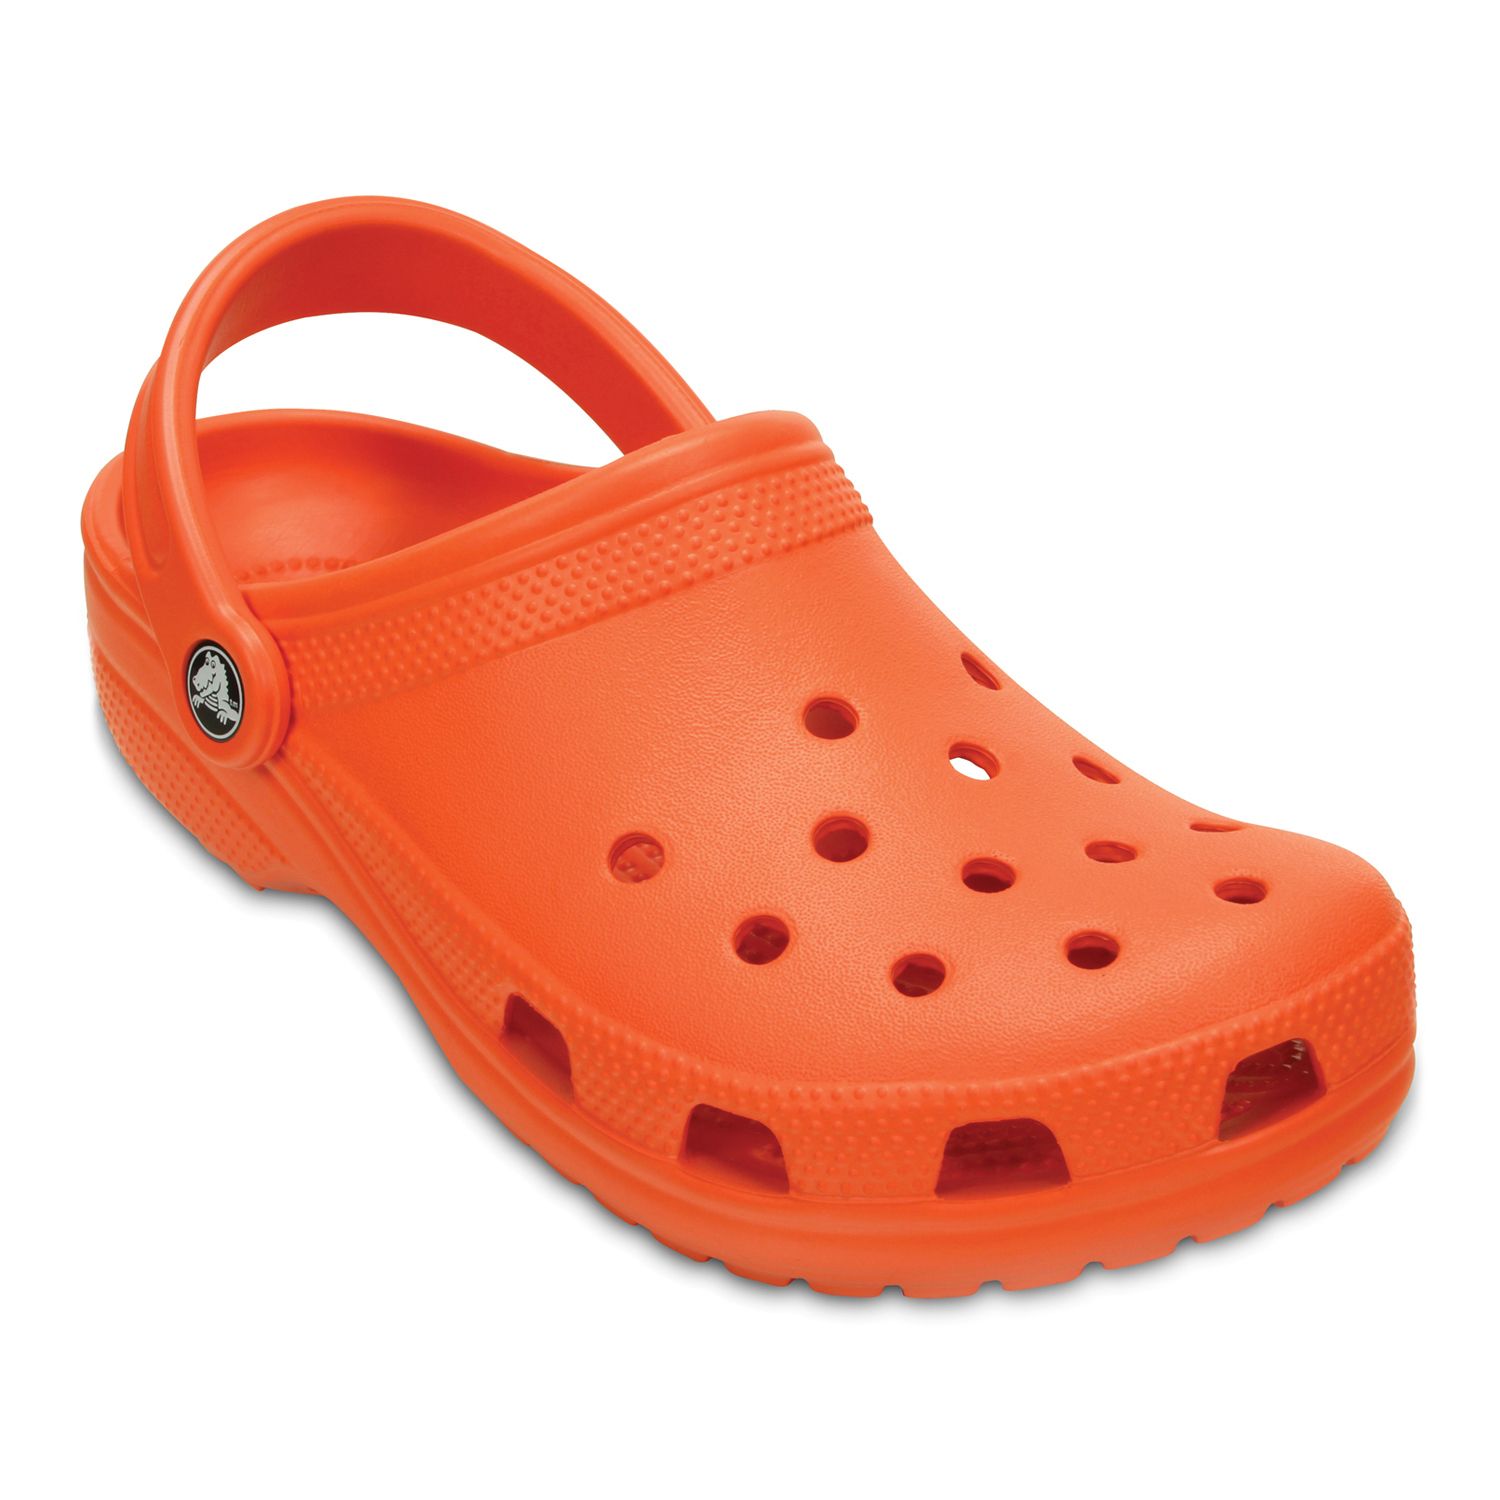 crocs female sandals